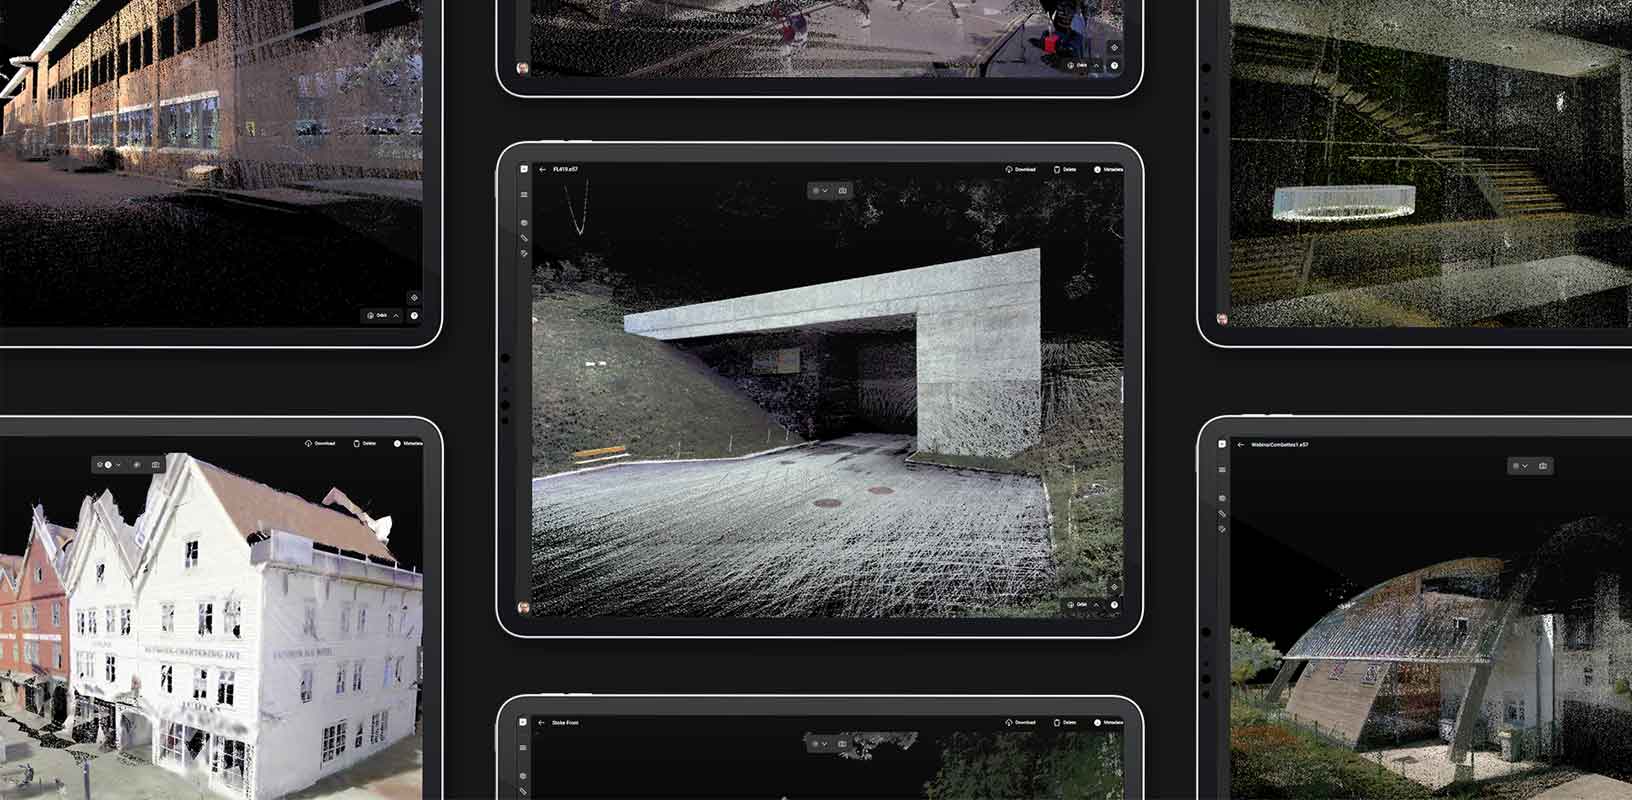 HxDRプラットフォームの静止画像が表示されたタブレット端末